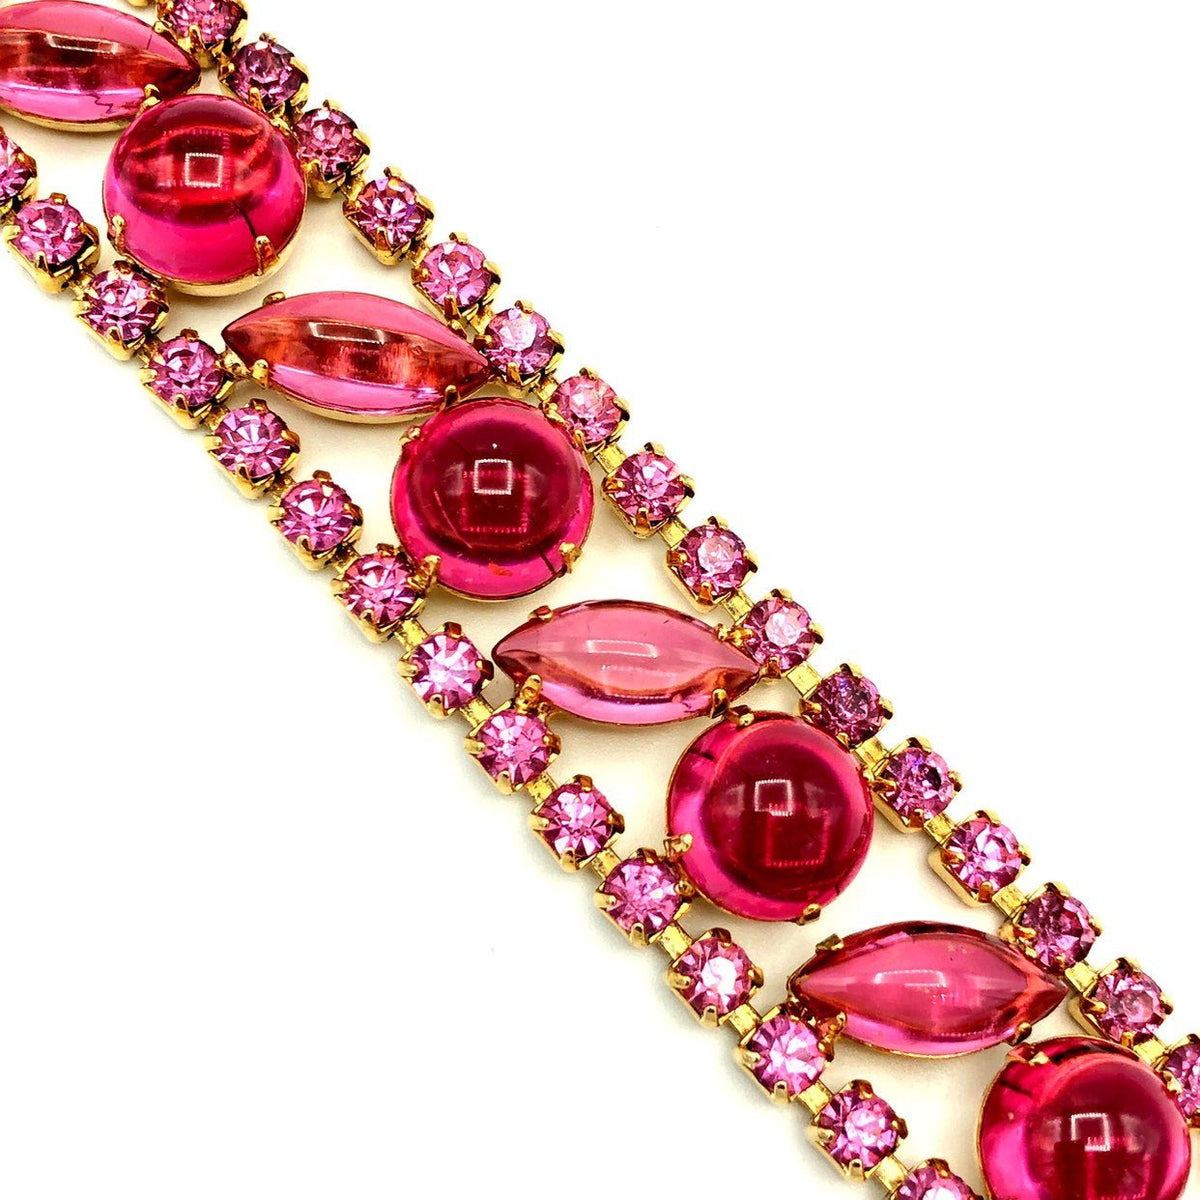 Weiss Pink Rhinestone Vintage Statement Bracelet - 24 Wishes Vintage Jewelry